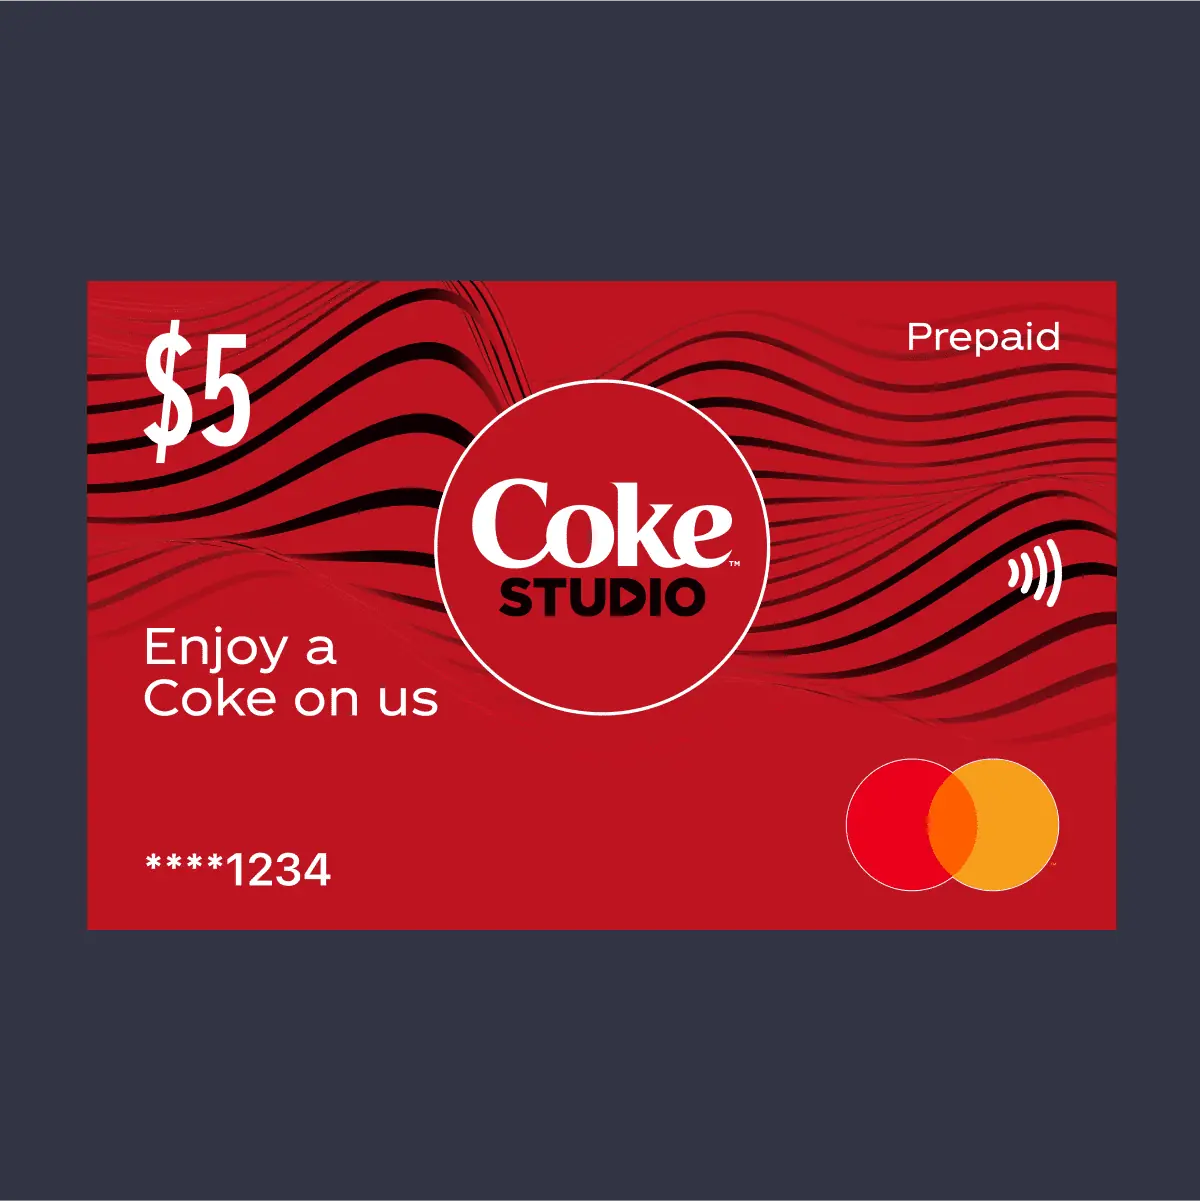 $5 Coke on us